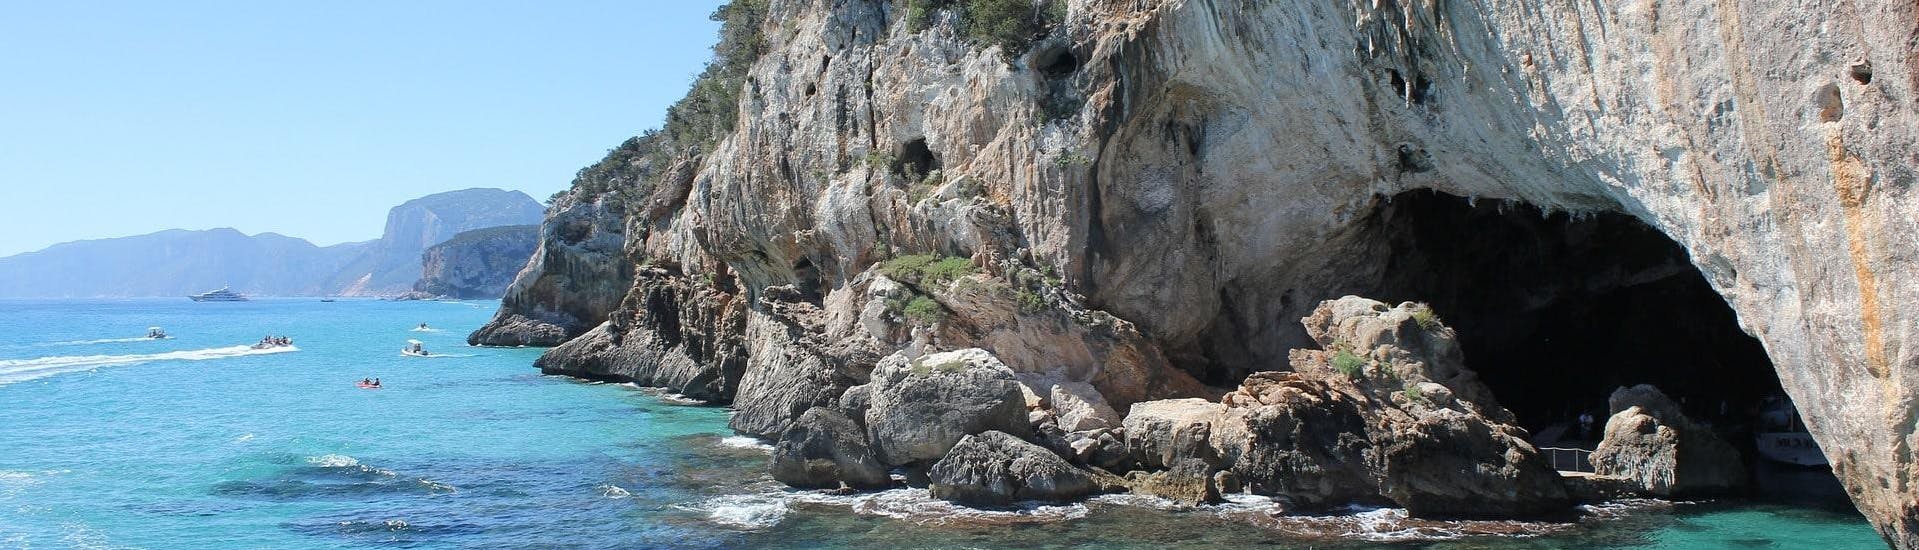 Una barca parte dalla Grotta del Bue Marino, che può essere visitata durante una gita in barca in Sardegna.